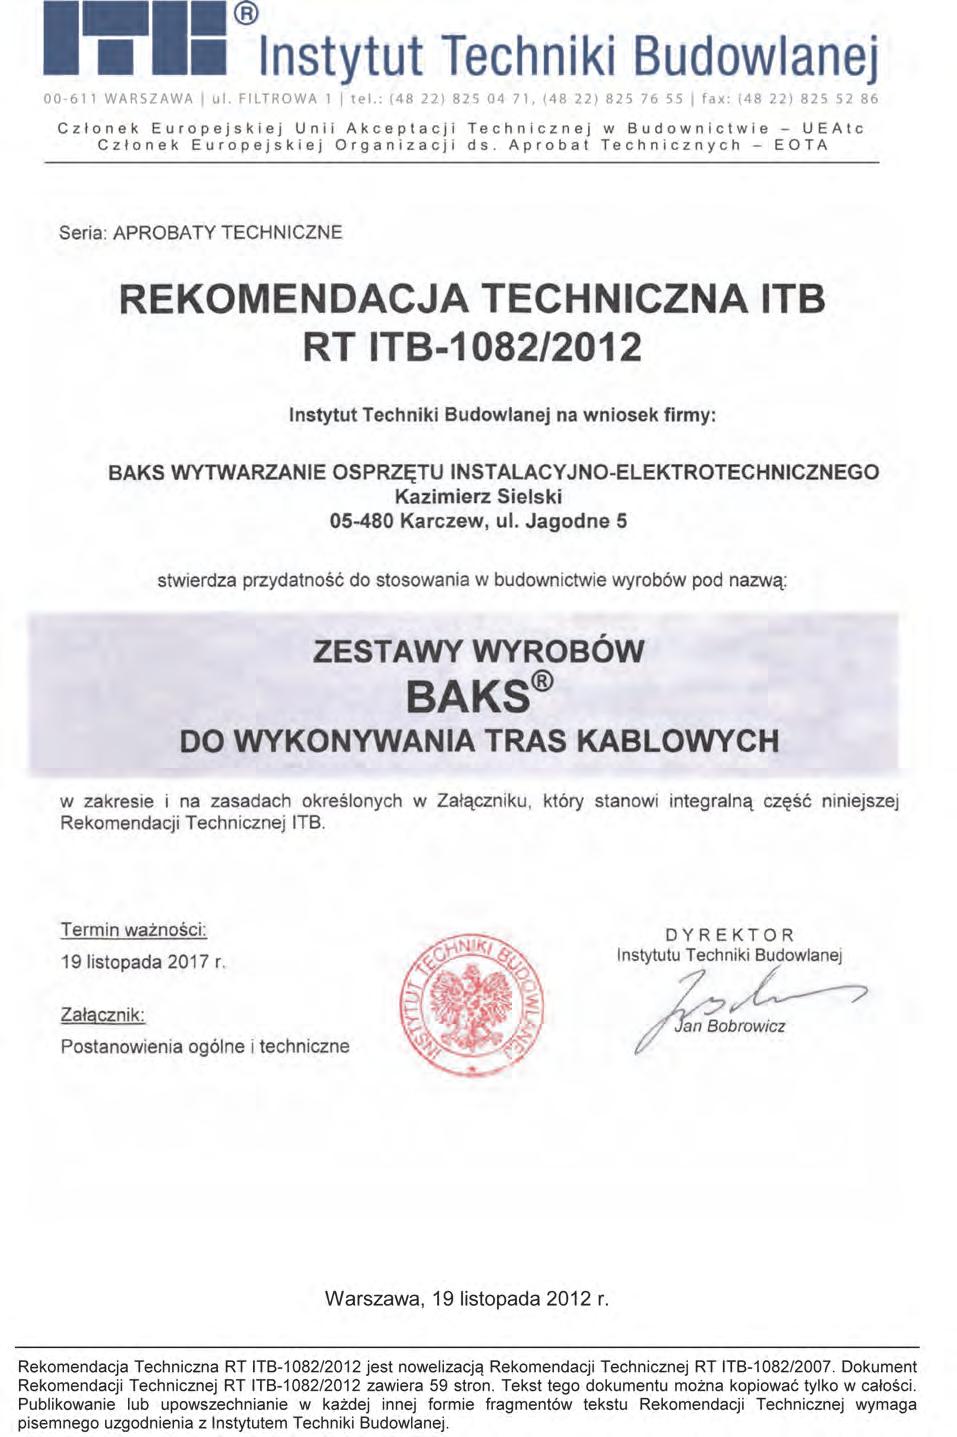 Rekomendacja techniczna W miejsce Aprobaty Technicznej dla wyrobów firmy BAKS została wydana Rekomendacja Techniczna